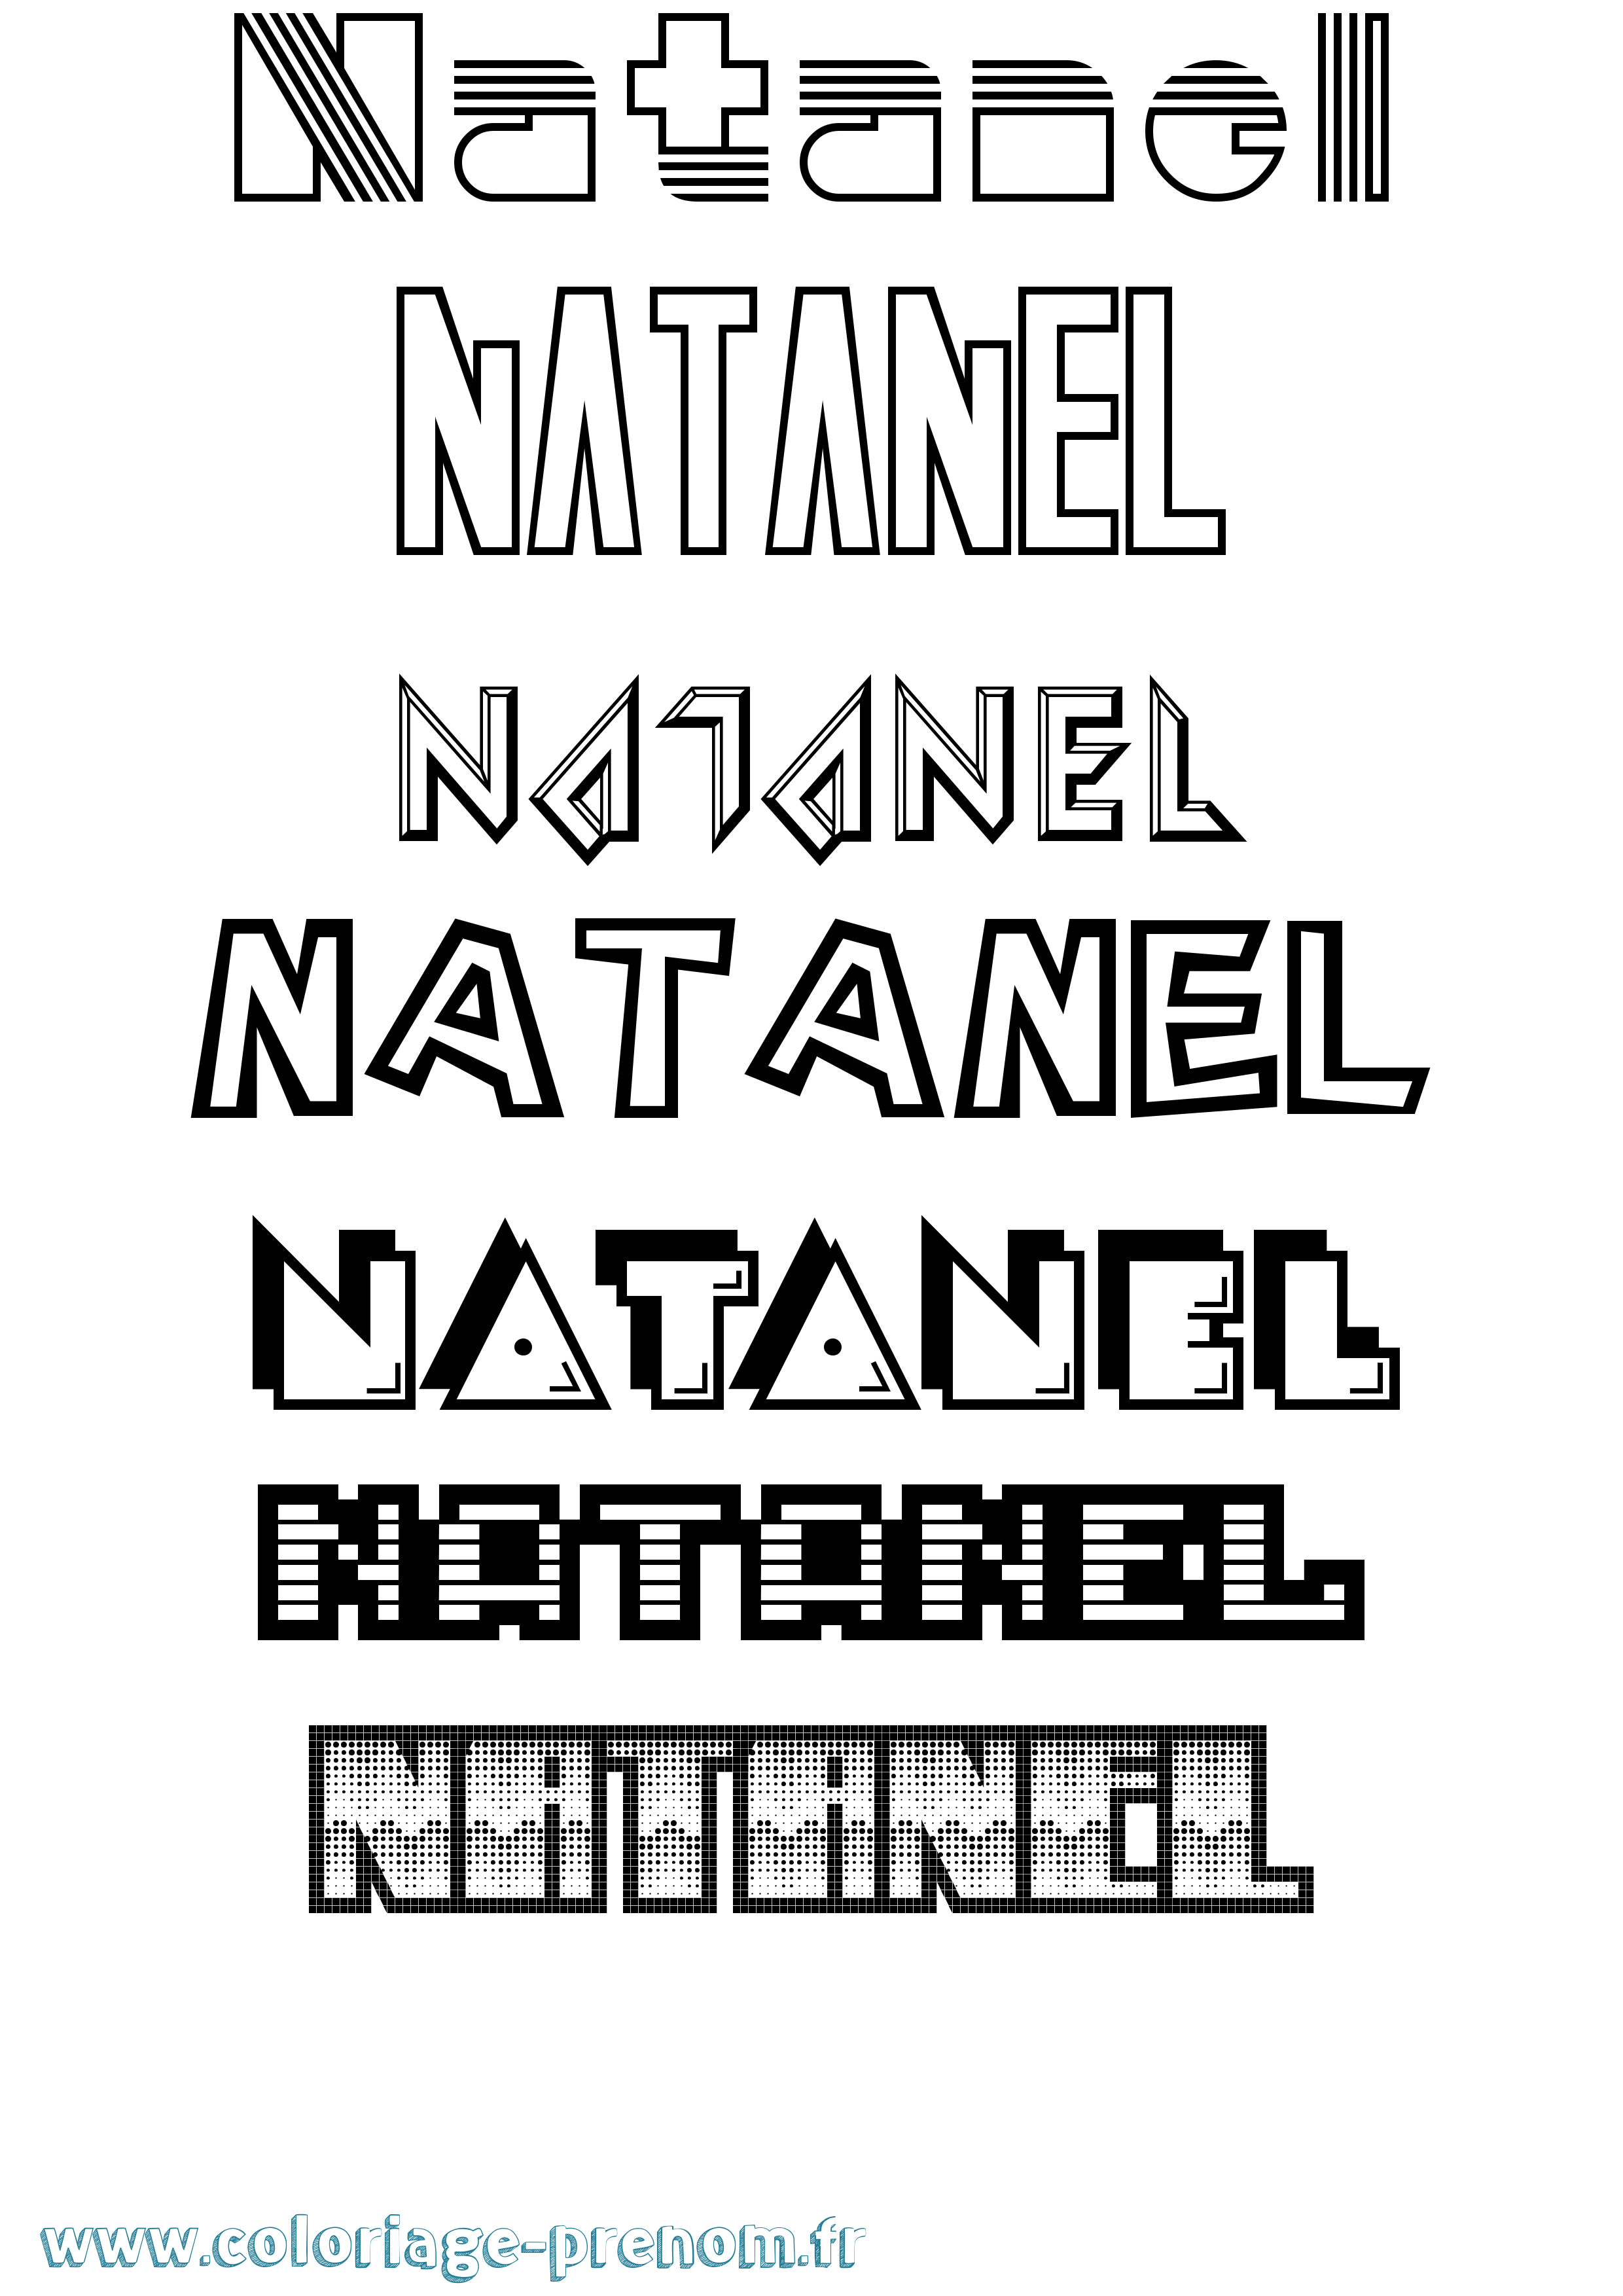 Coloriage prénom Natanel Jeux Vidéos